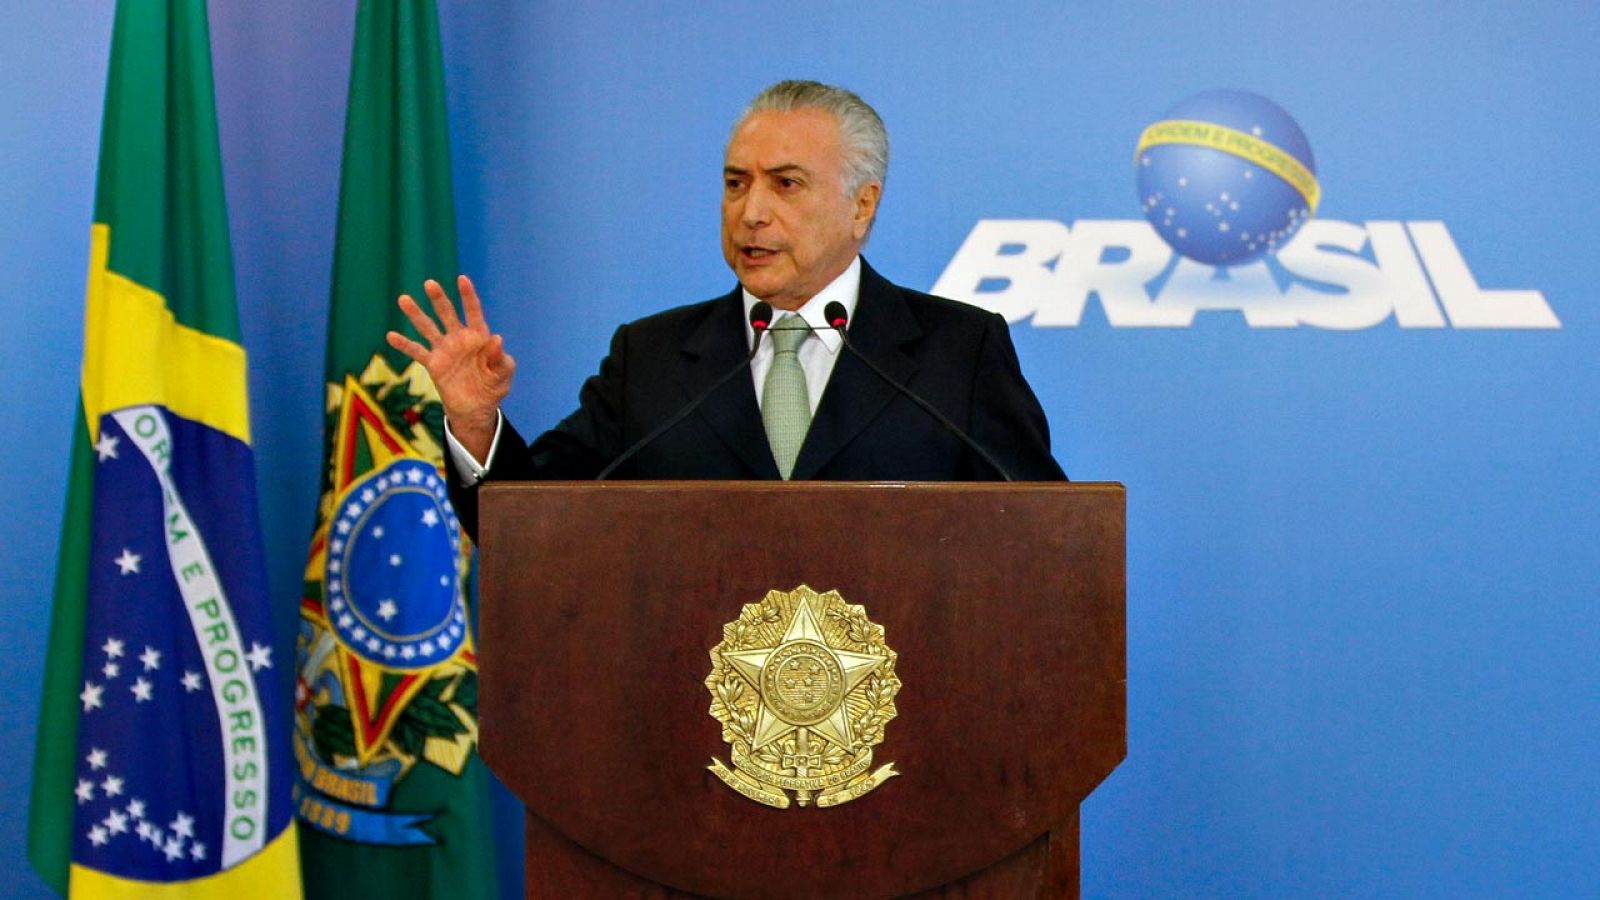 El presidente interino de Brasil, Michel Temer, ha negado las acusaciones de corrupción en un discurso televisado